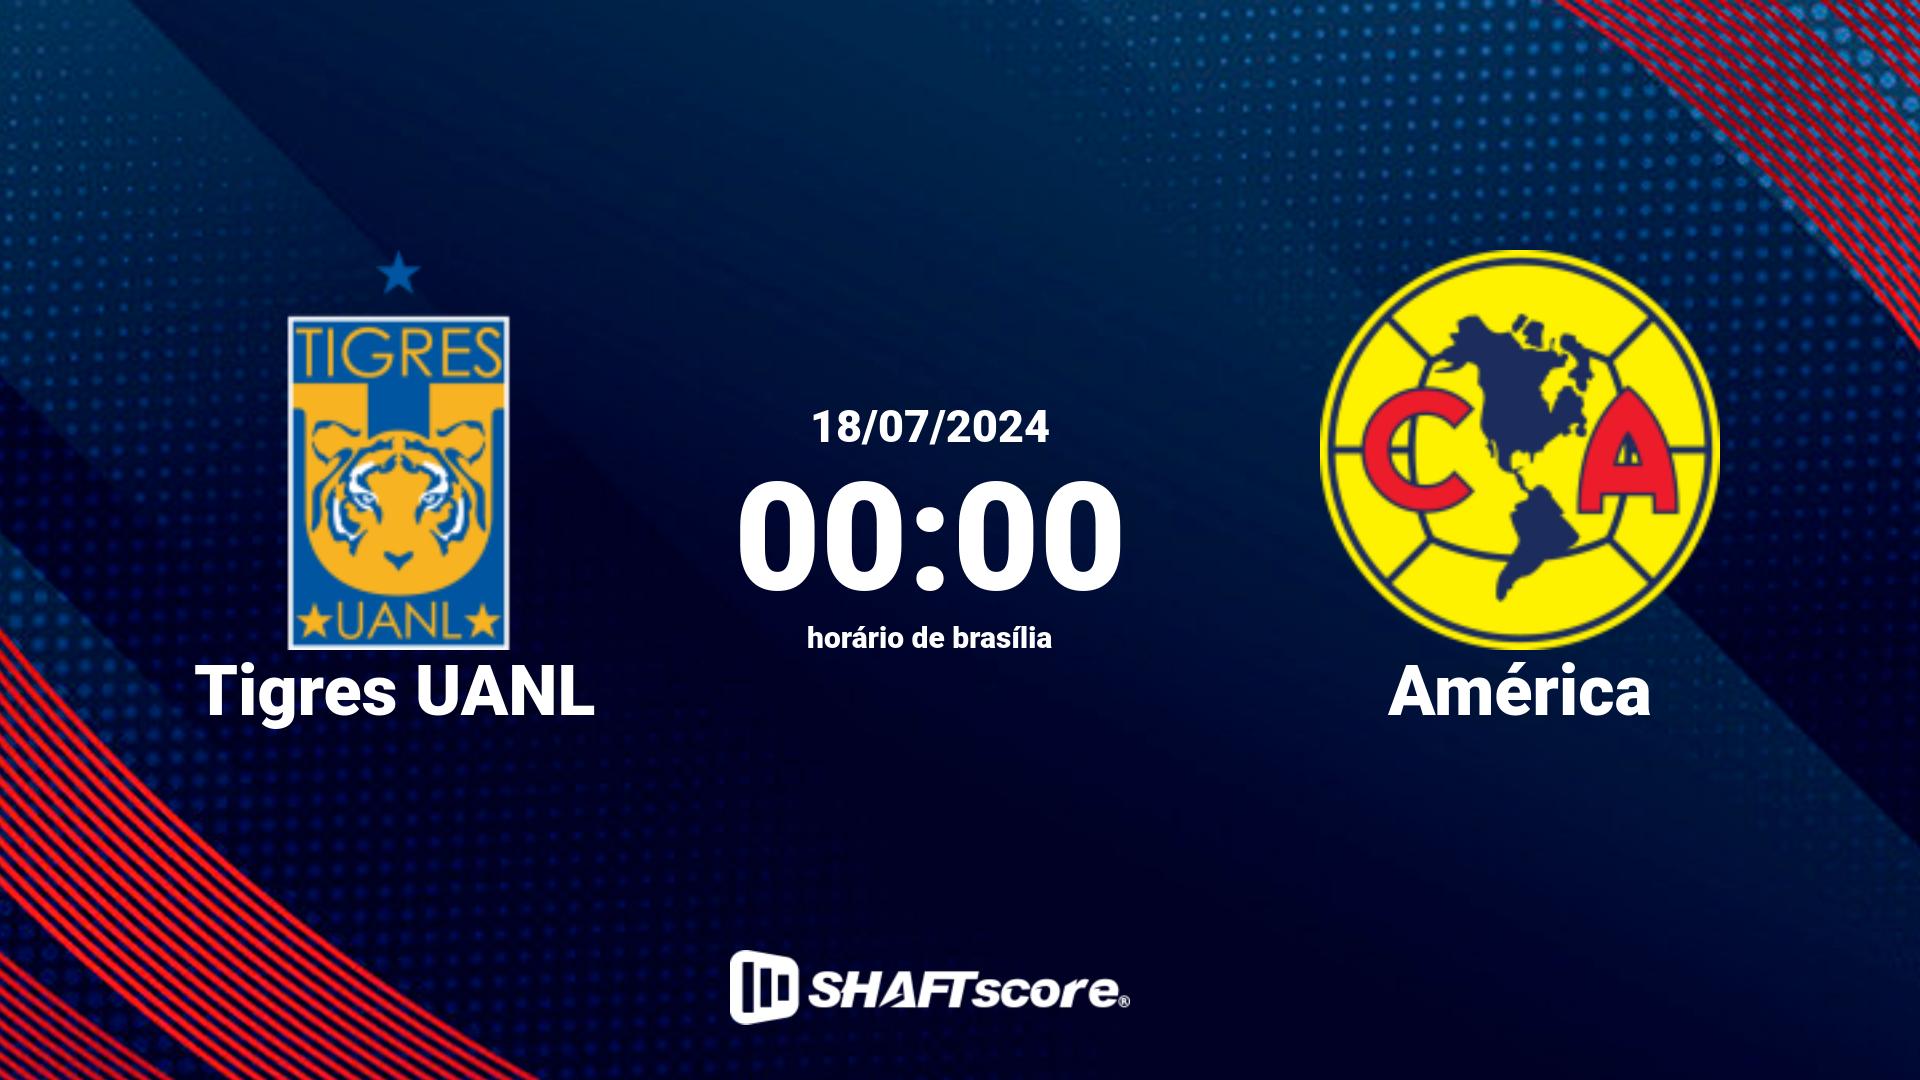 Estatísticas do jogo Tigres UANL vs América 18.07 00:00